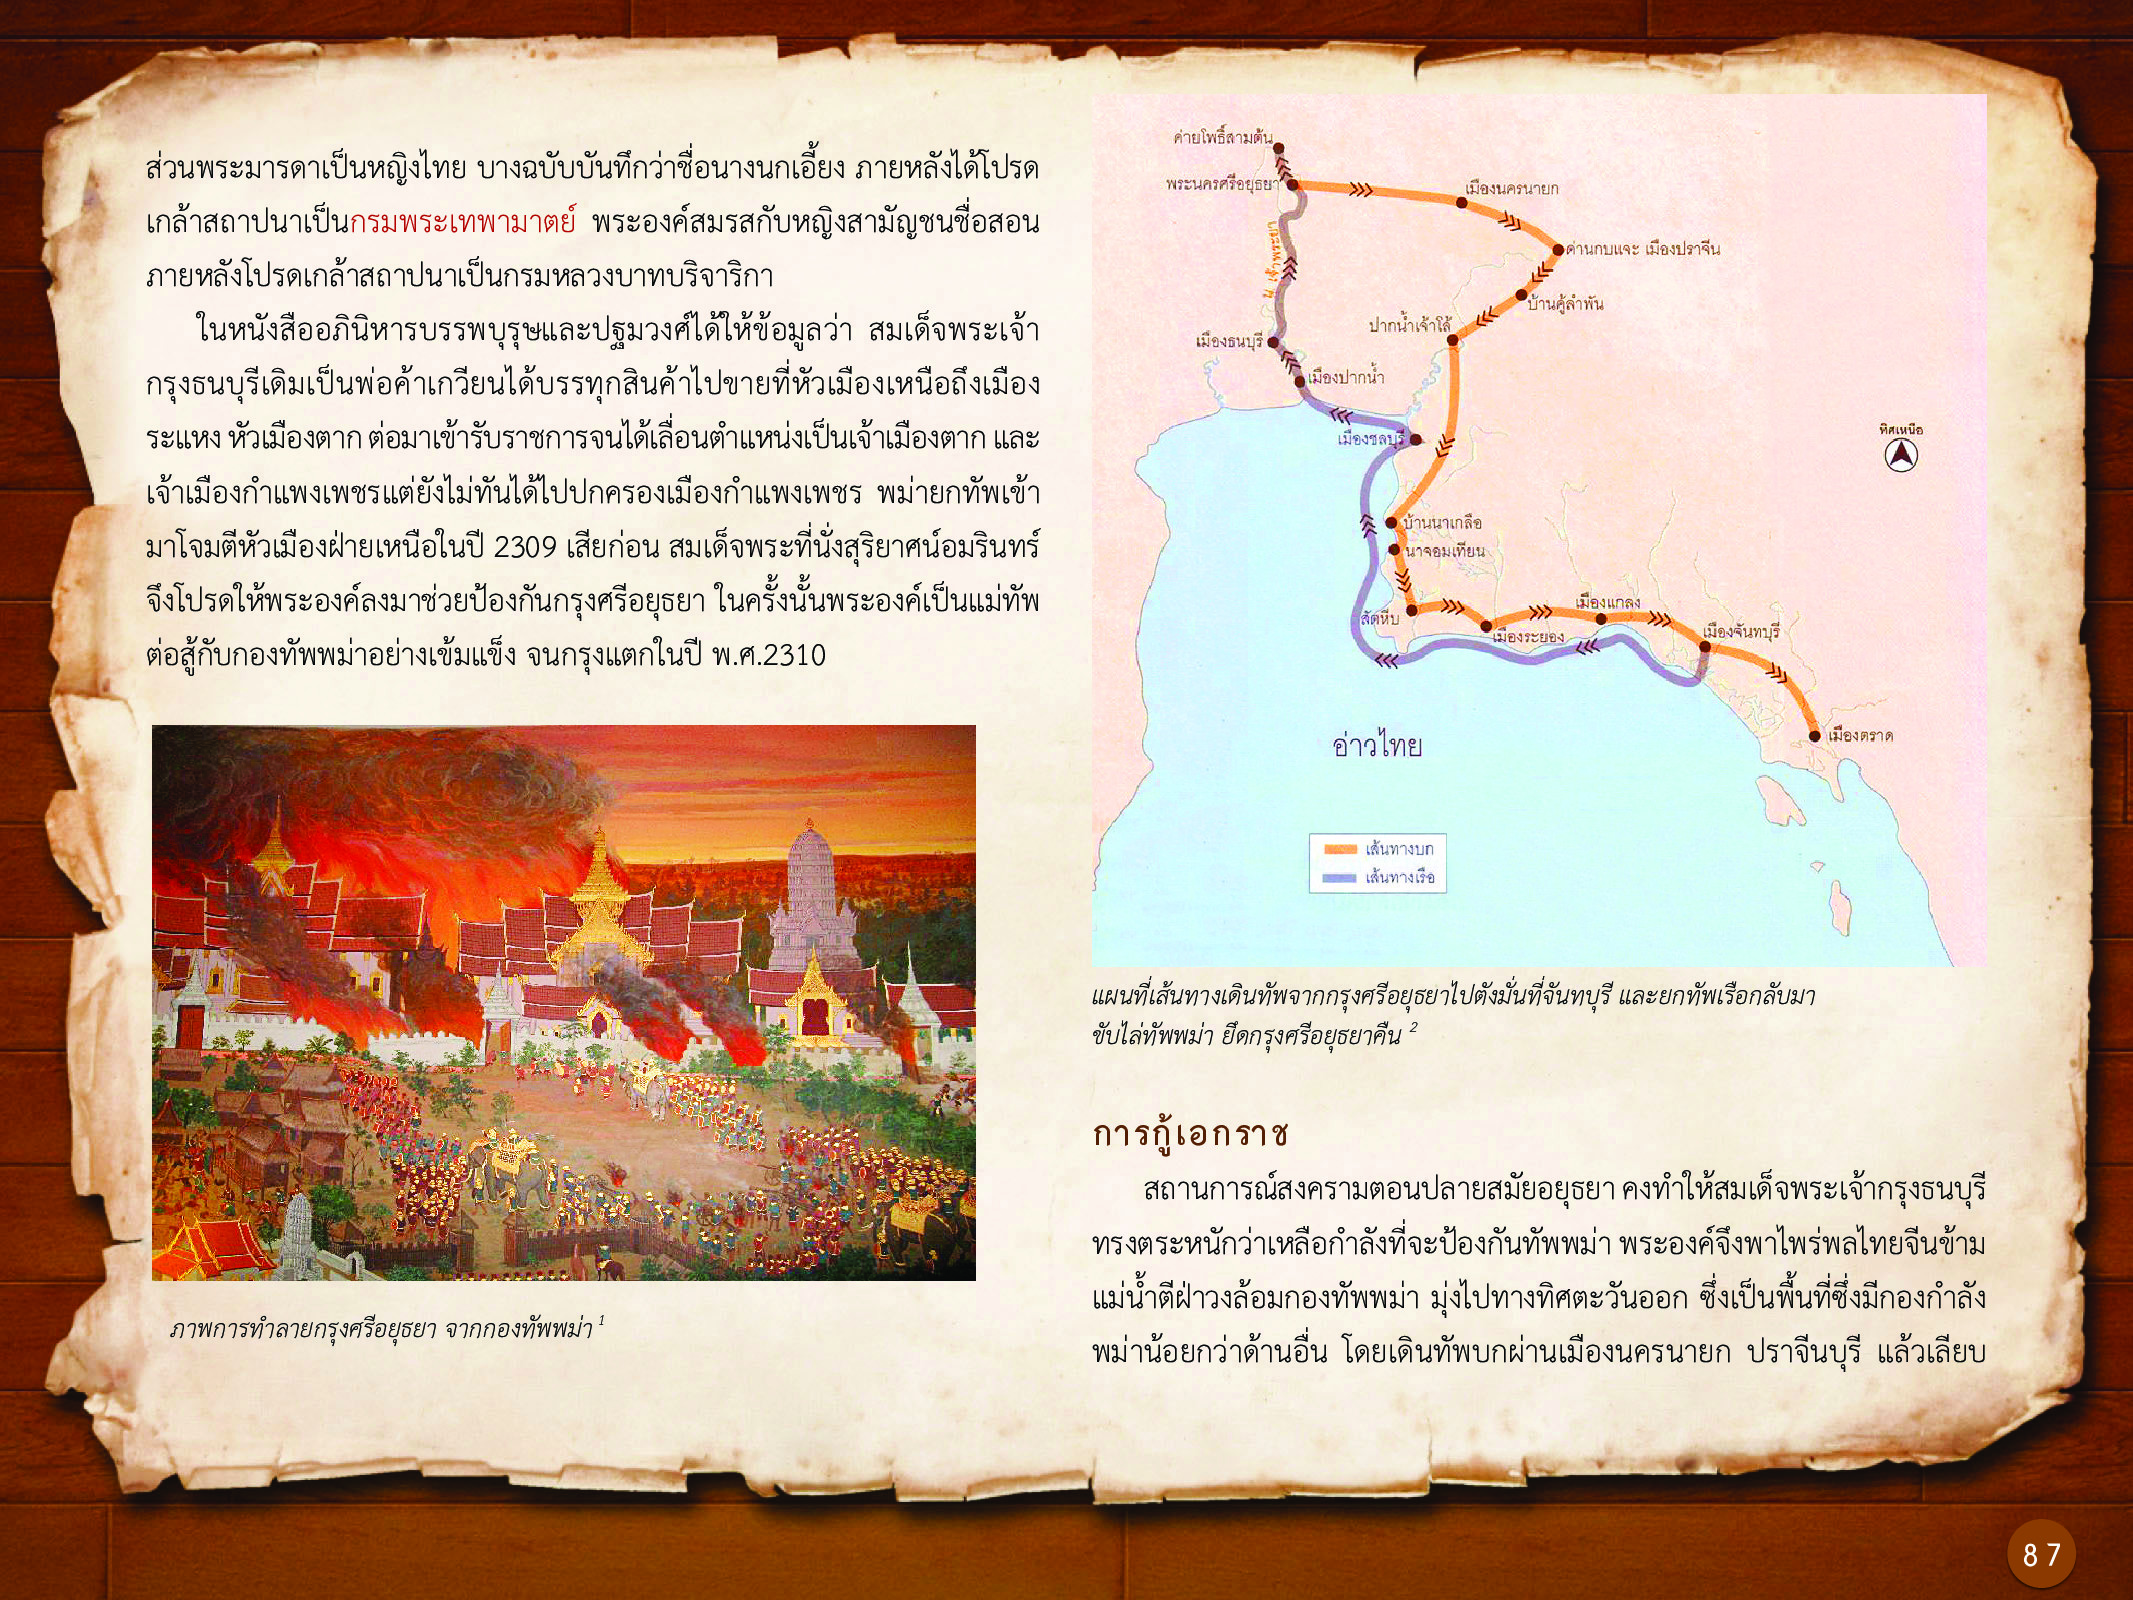 ประวัติศาสตร์กรุงธนบุรี ./images/history_dhonburi/87.jpg